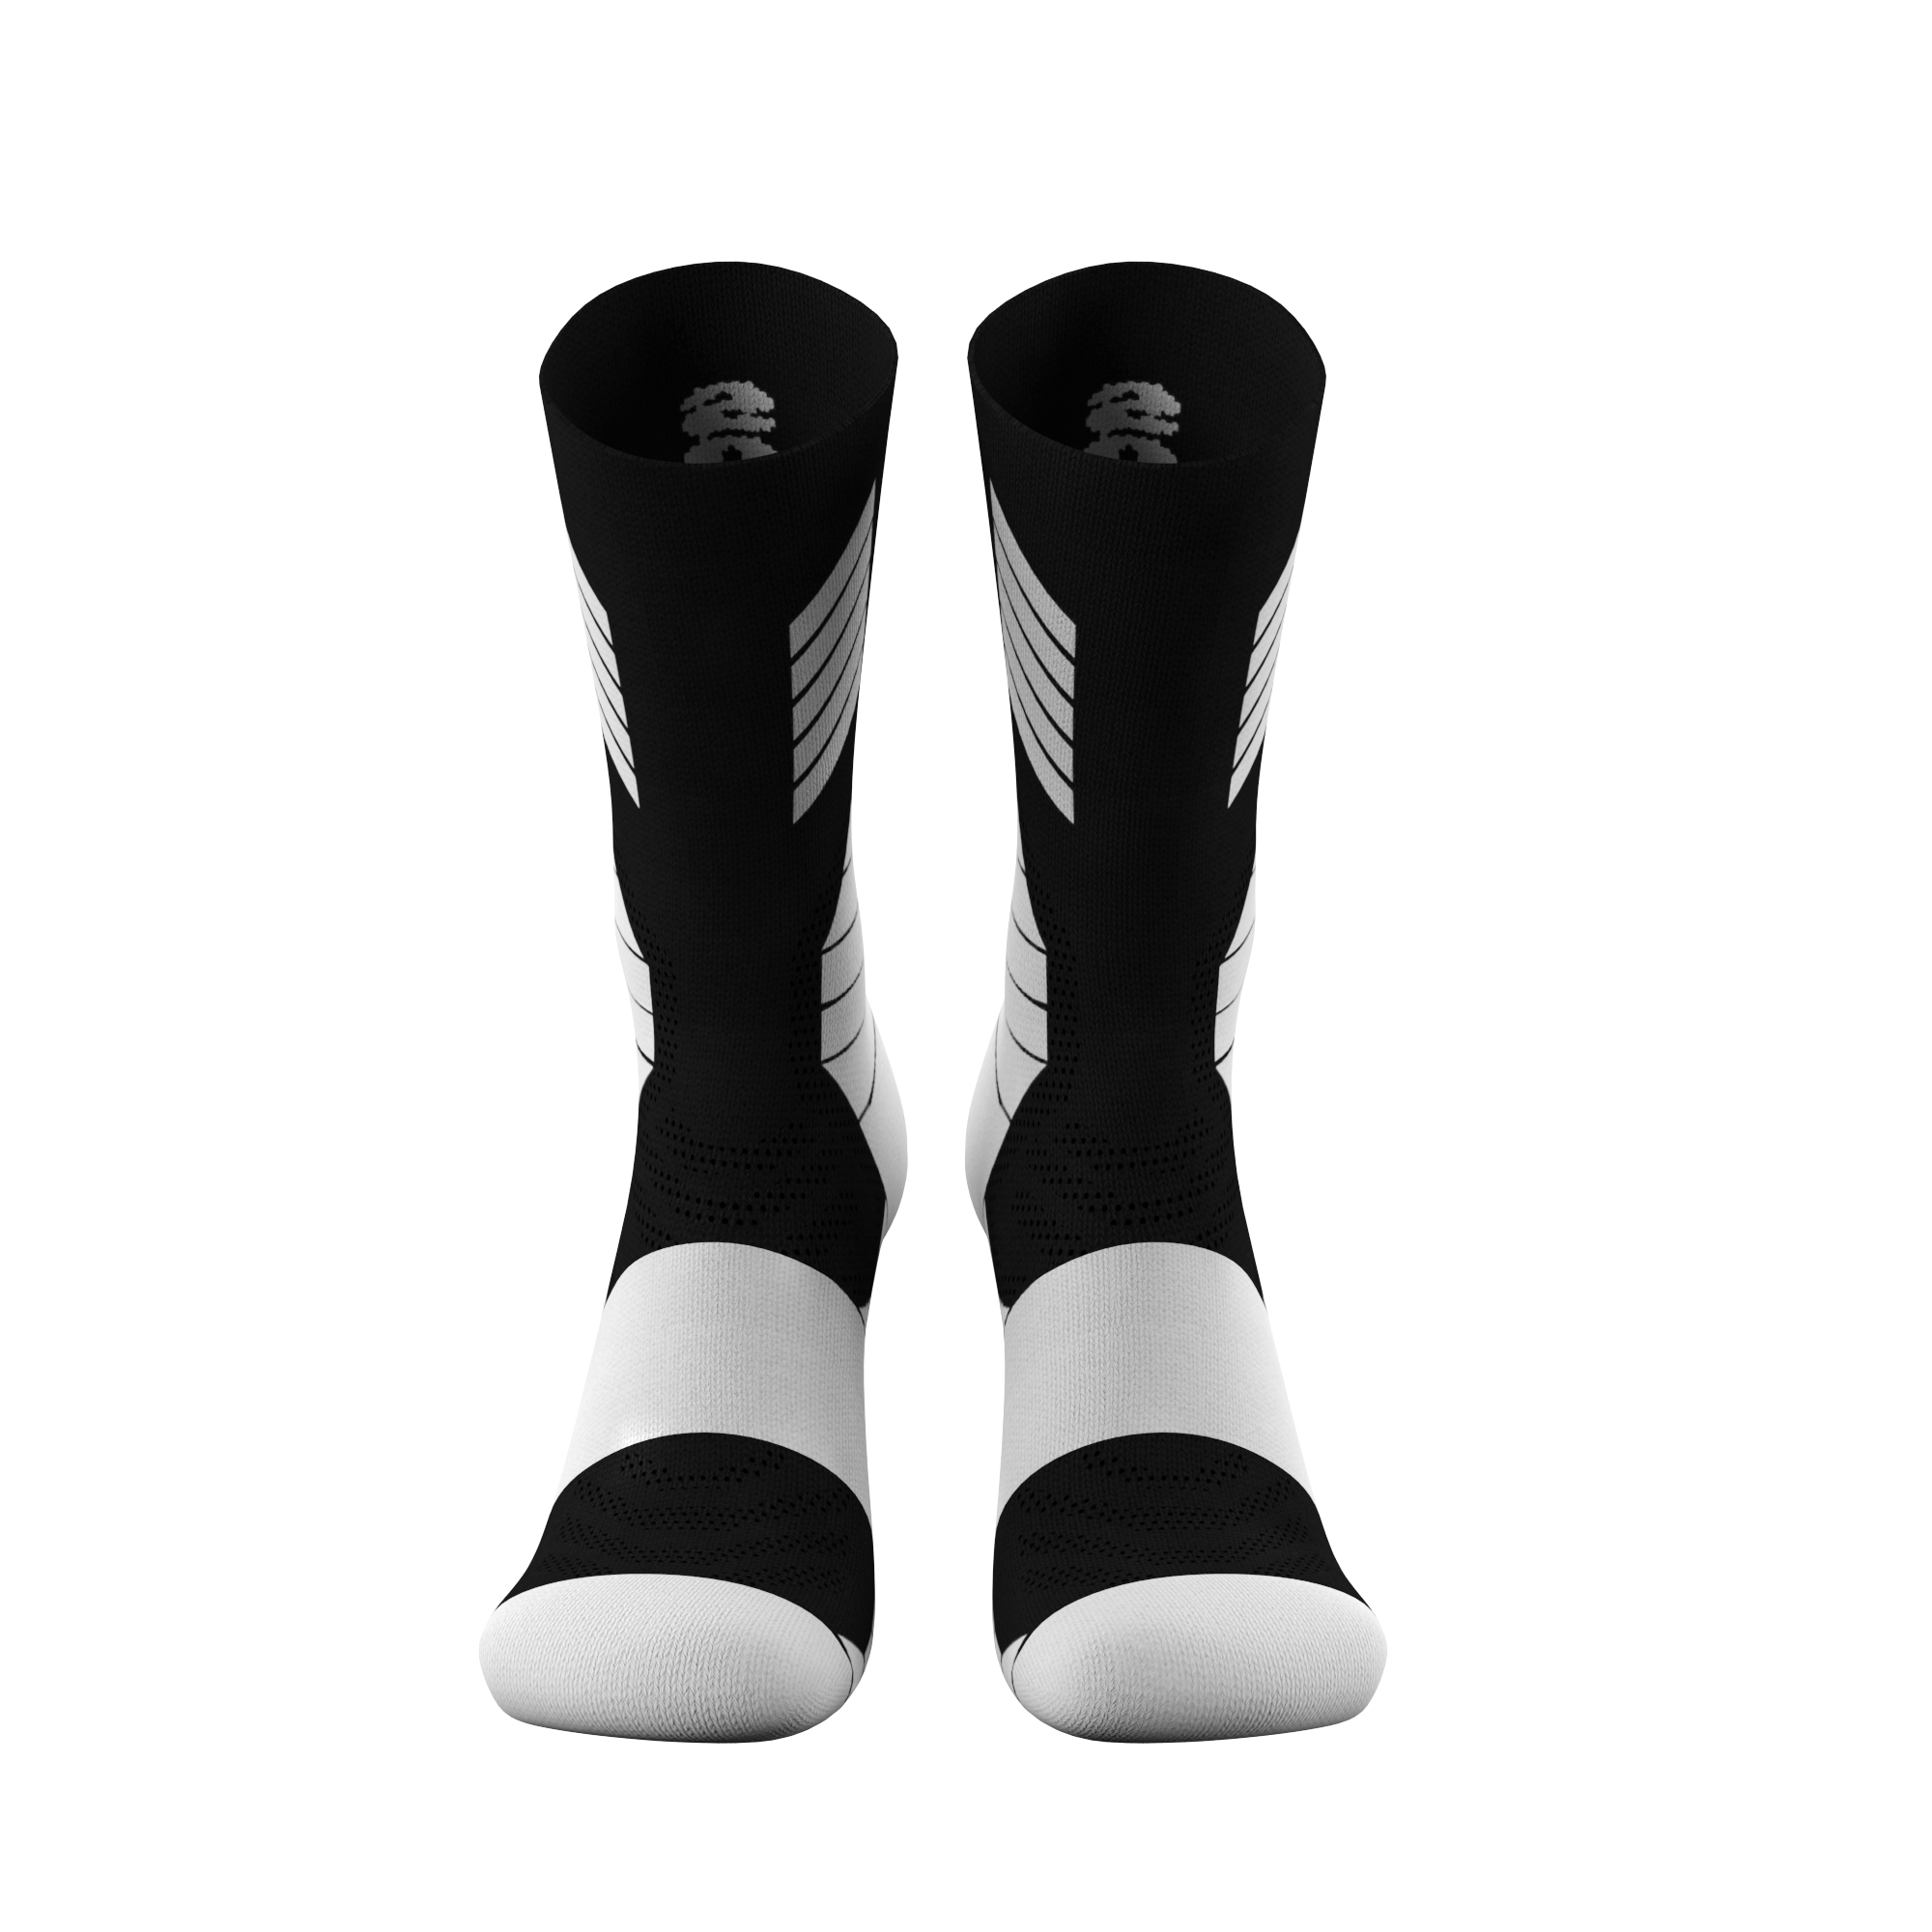 Souke Sports  Women's Commuting Socks Heat Absorption PS03-Grey-Souke Sports 